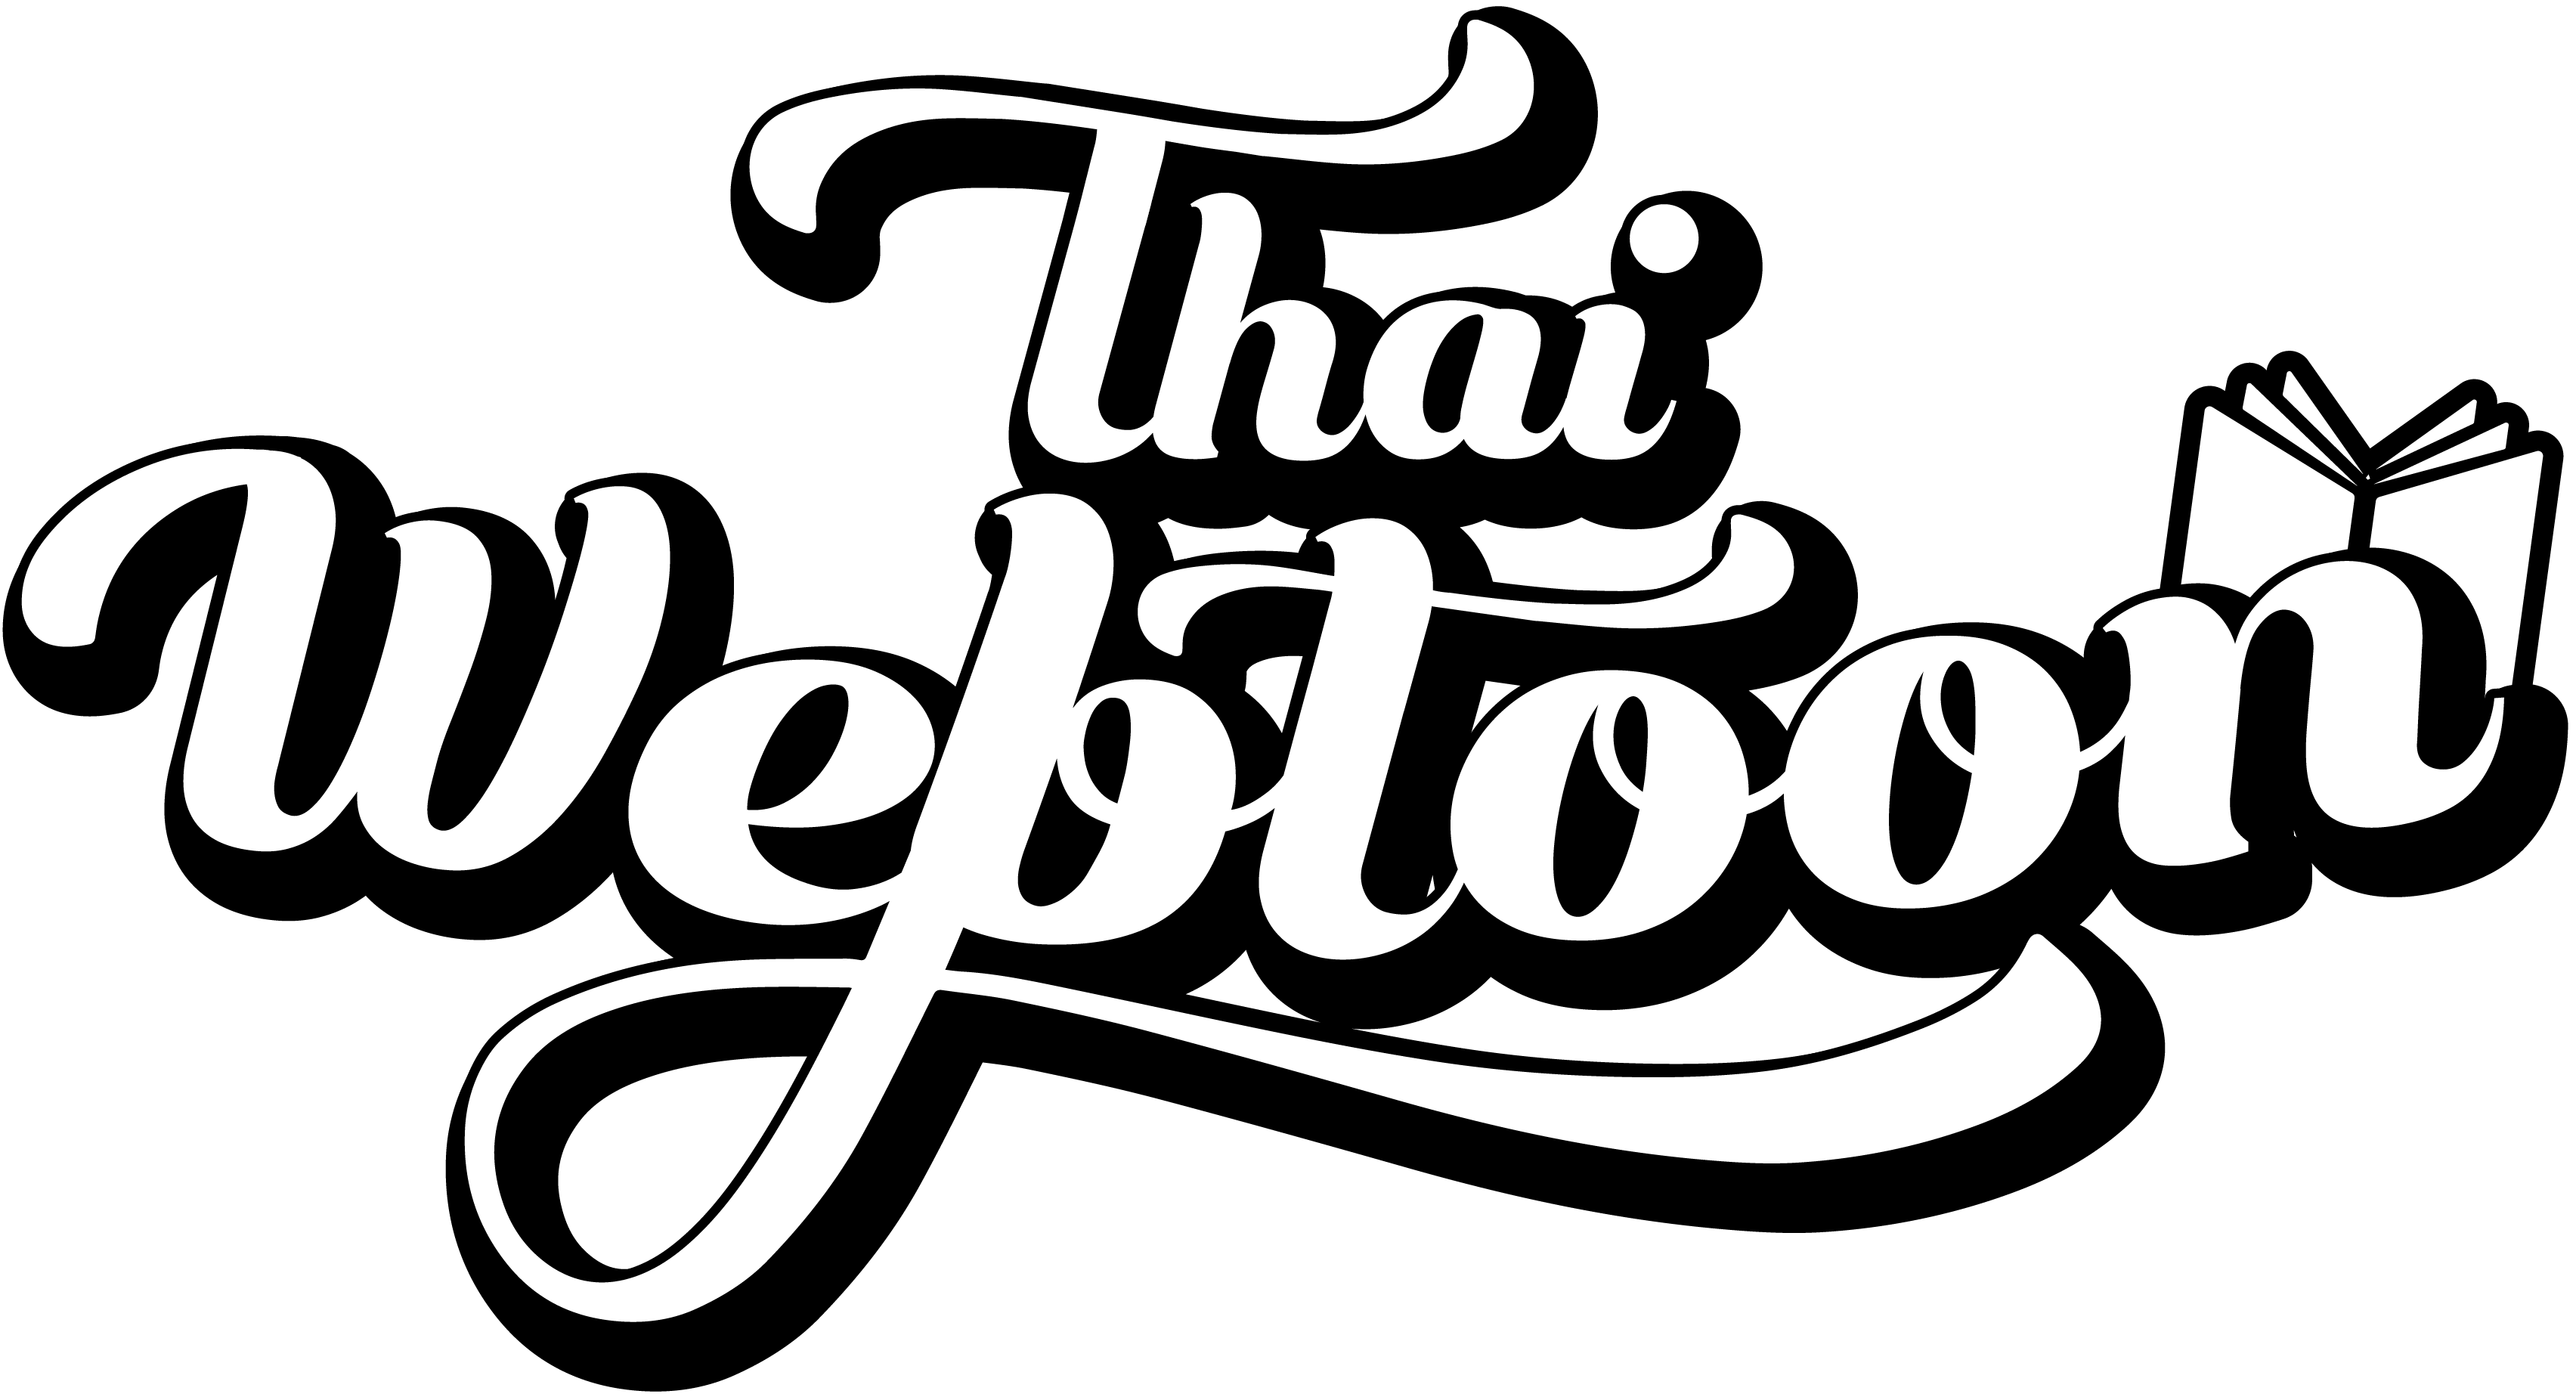 Thaiwebtoon logo